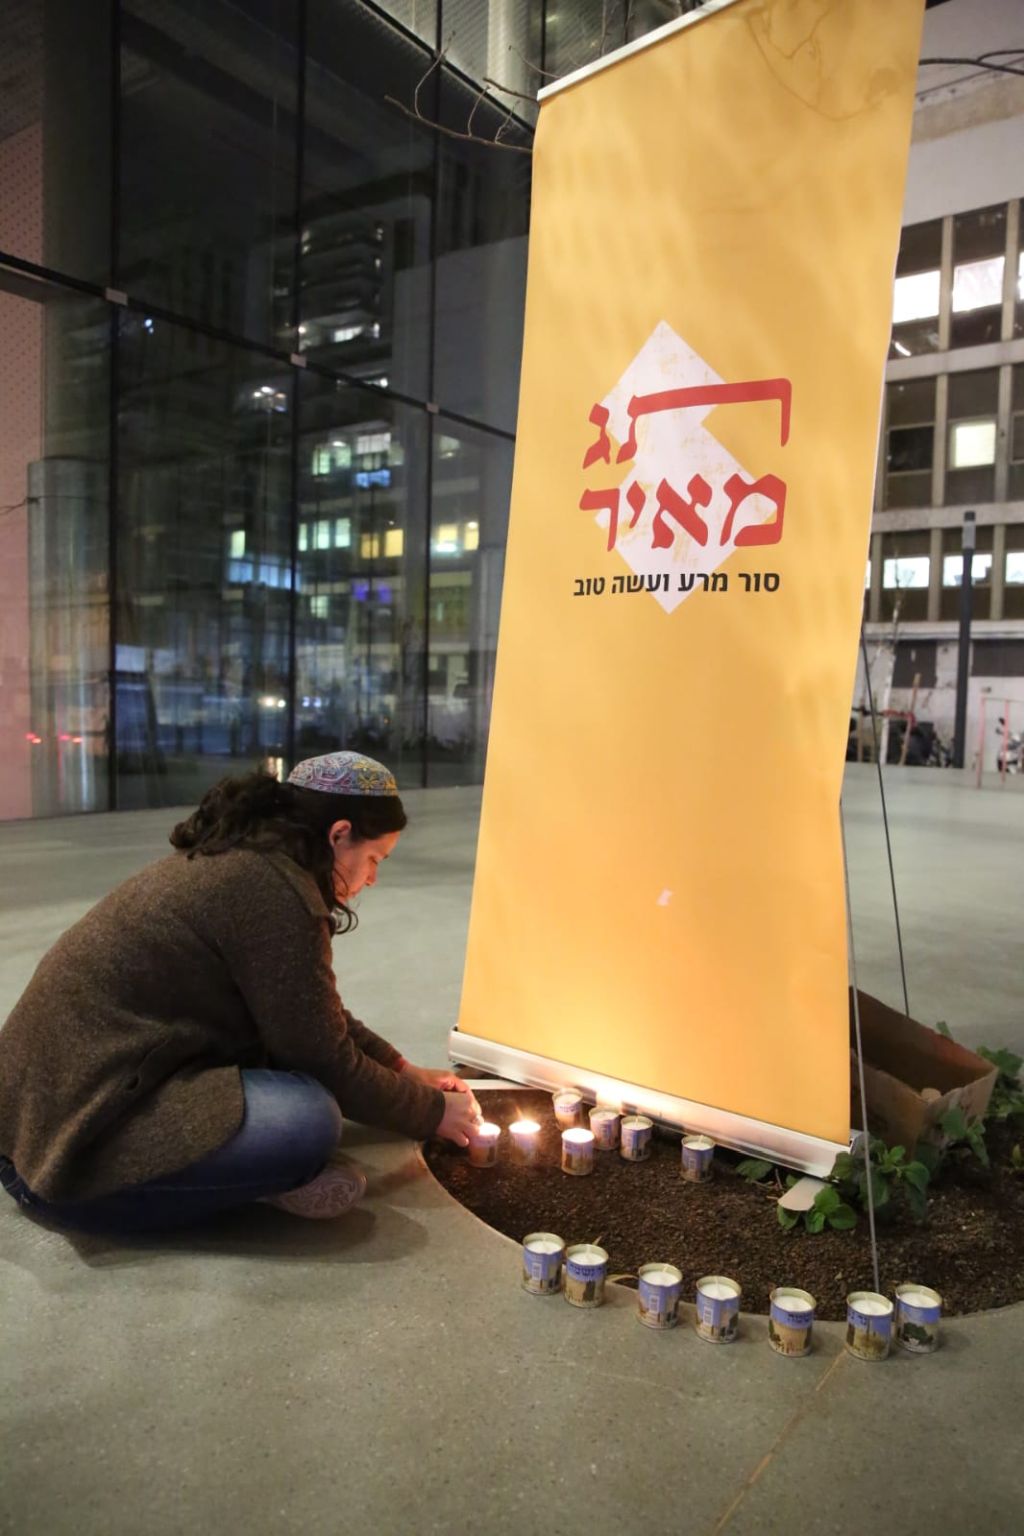 Una participante judía en la actividad de Tag Meir, agachada frente a un cartel con el nombre de la organización, enciende una vela recordatoria